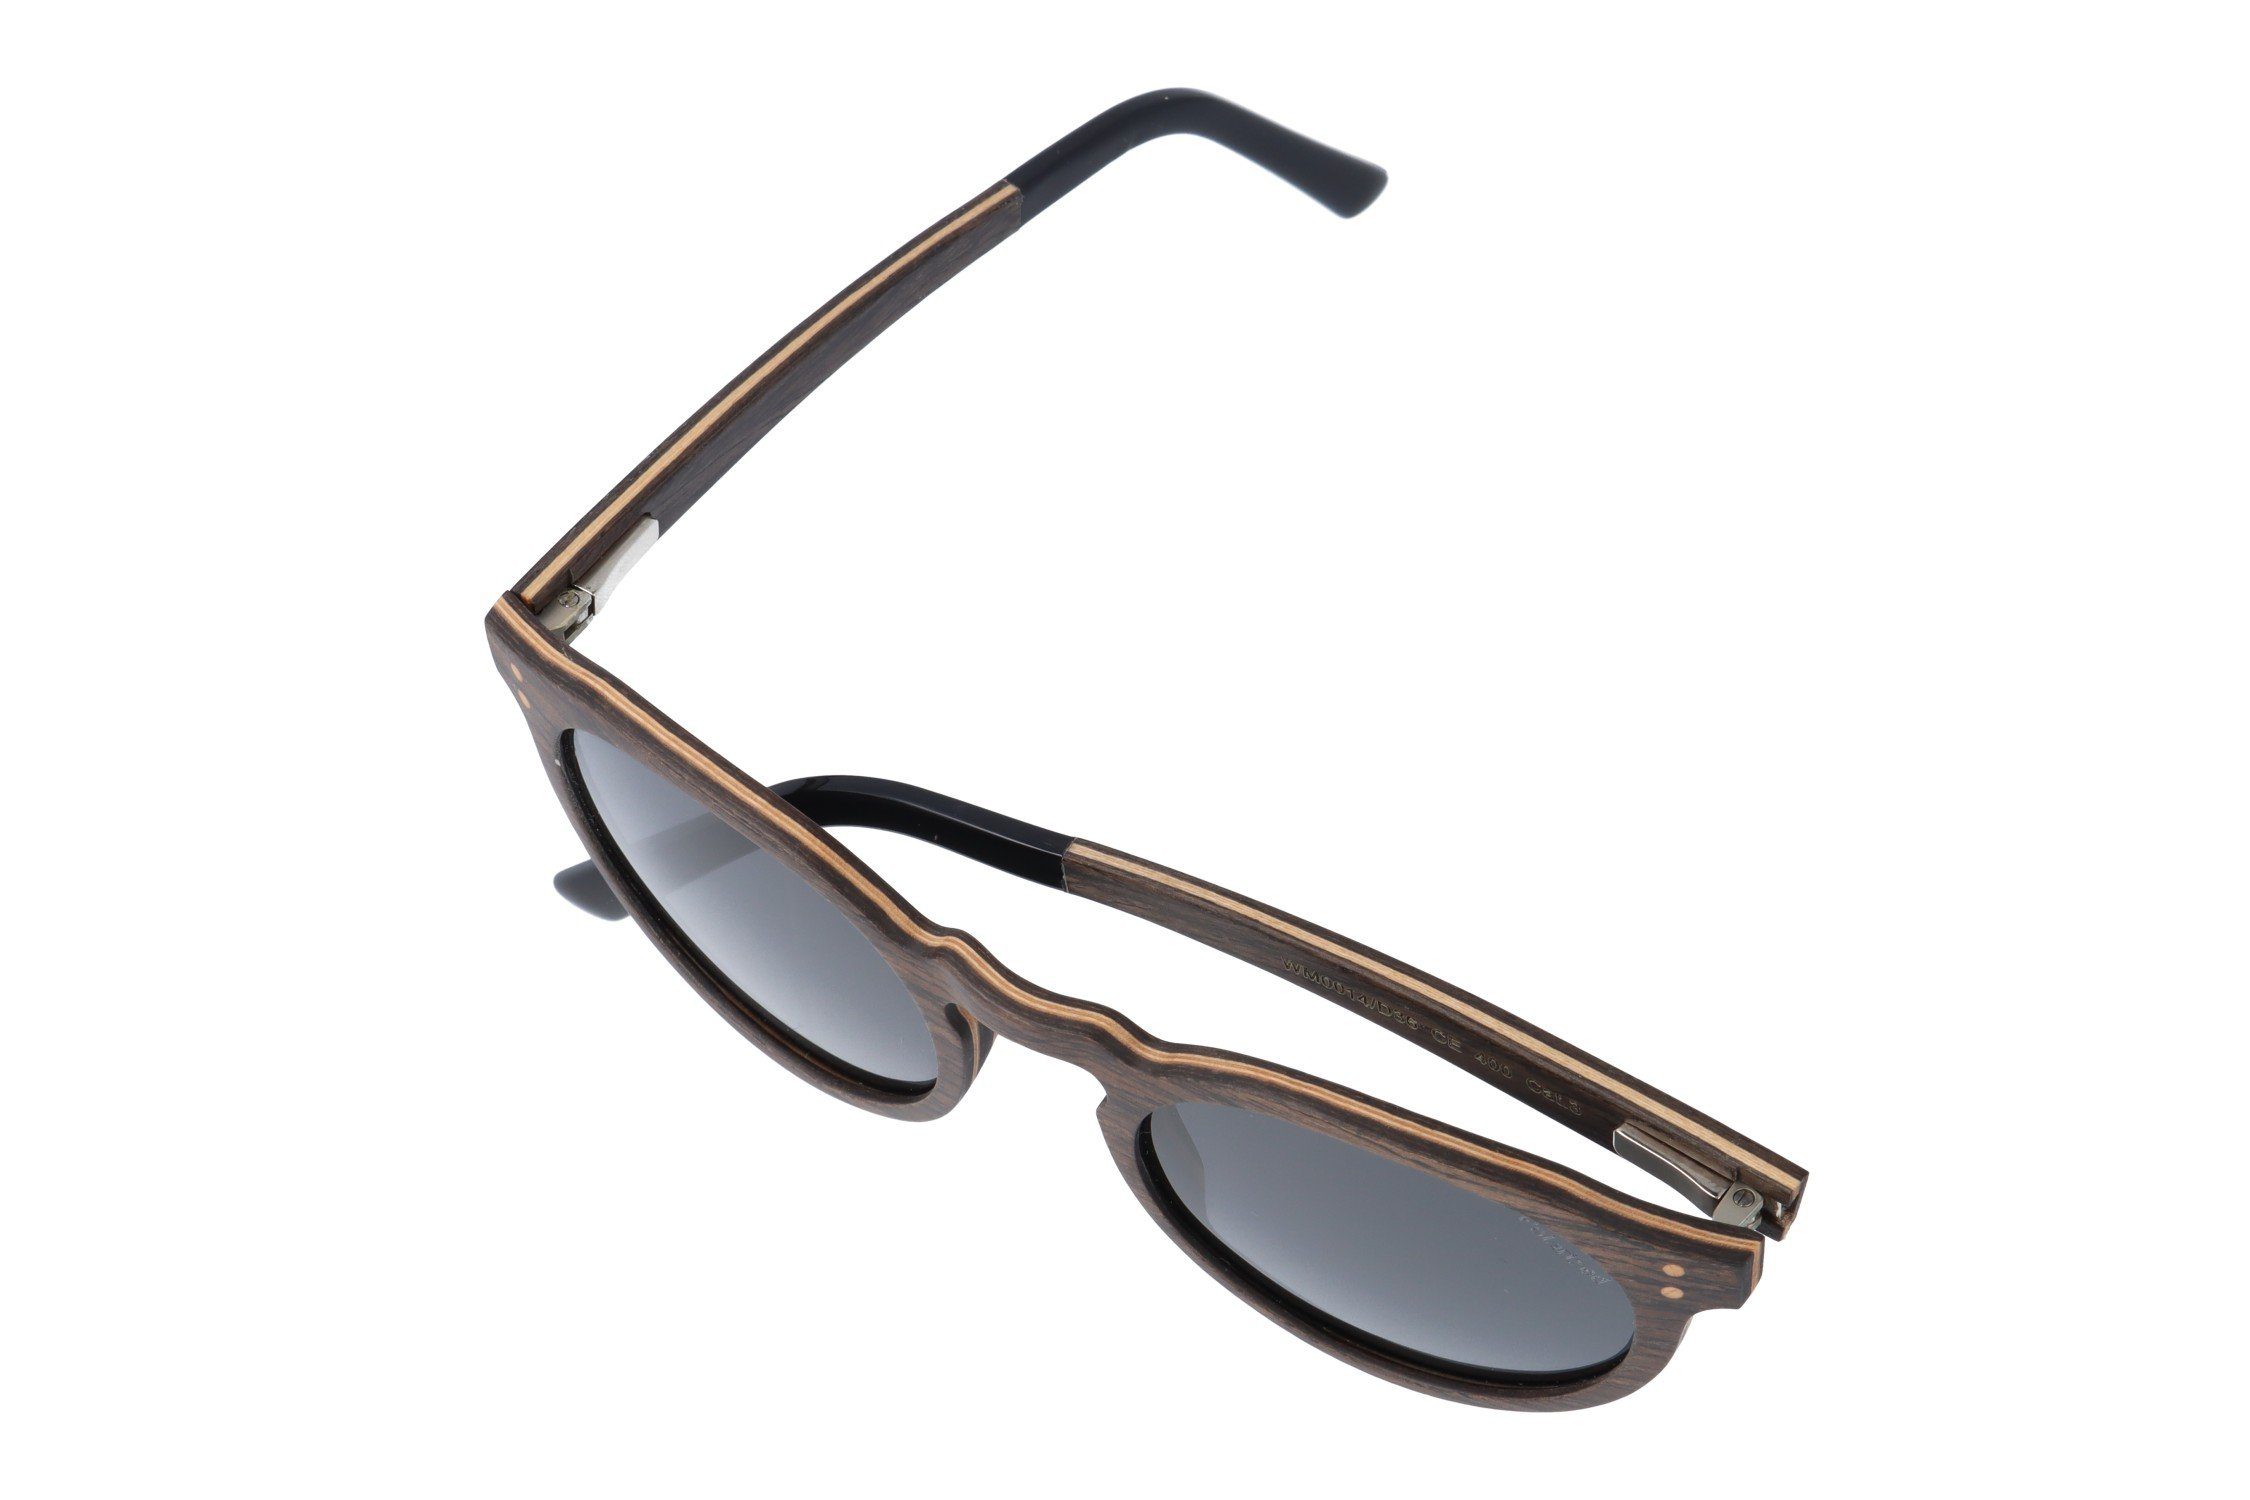 Gamswild Gläser Damen Sonnenbrille polarisierte grau GAMSSTYLE Holzbrille in Unisex, G15 braun, & Herren WM0014